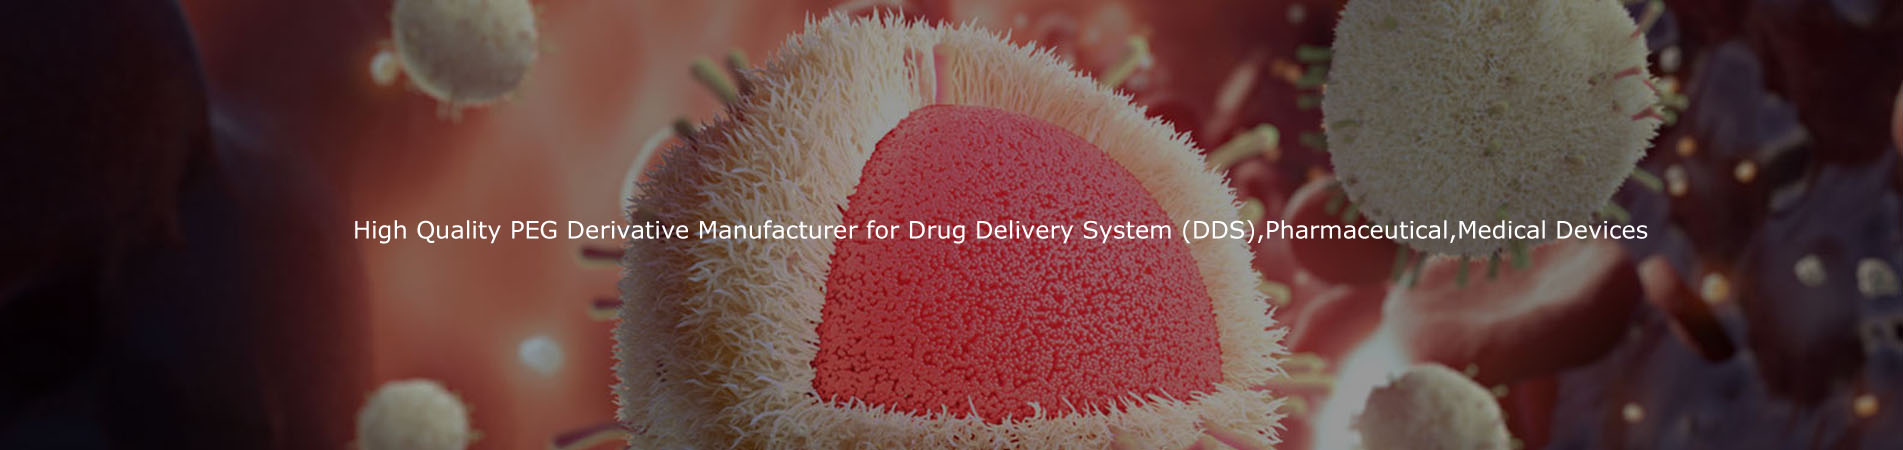 Υψηλής ποιότητας Παράγωγος PEG κατασκευαστής για το σύστημα παράδοσης φαρμάκων (DDS), φαρμακευτικές, ιατρικές συσκευές